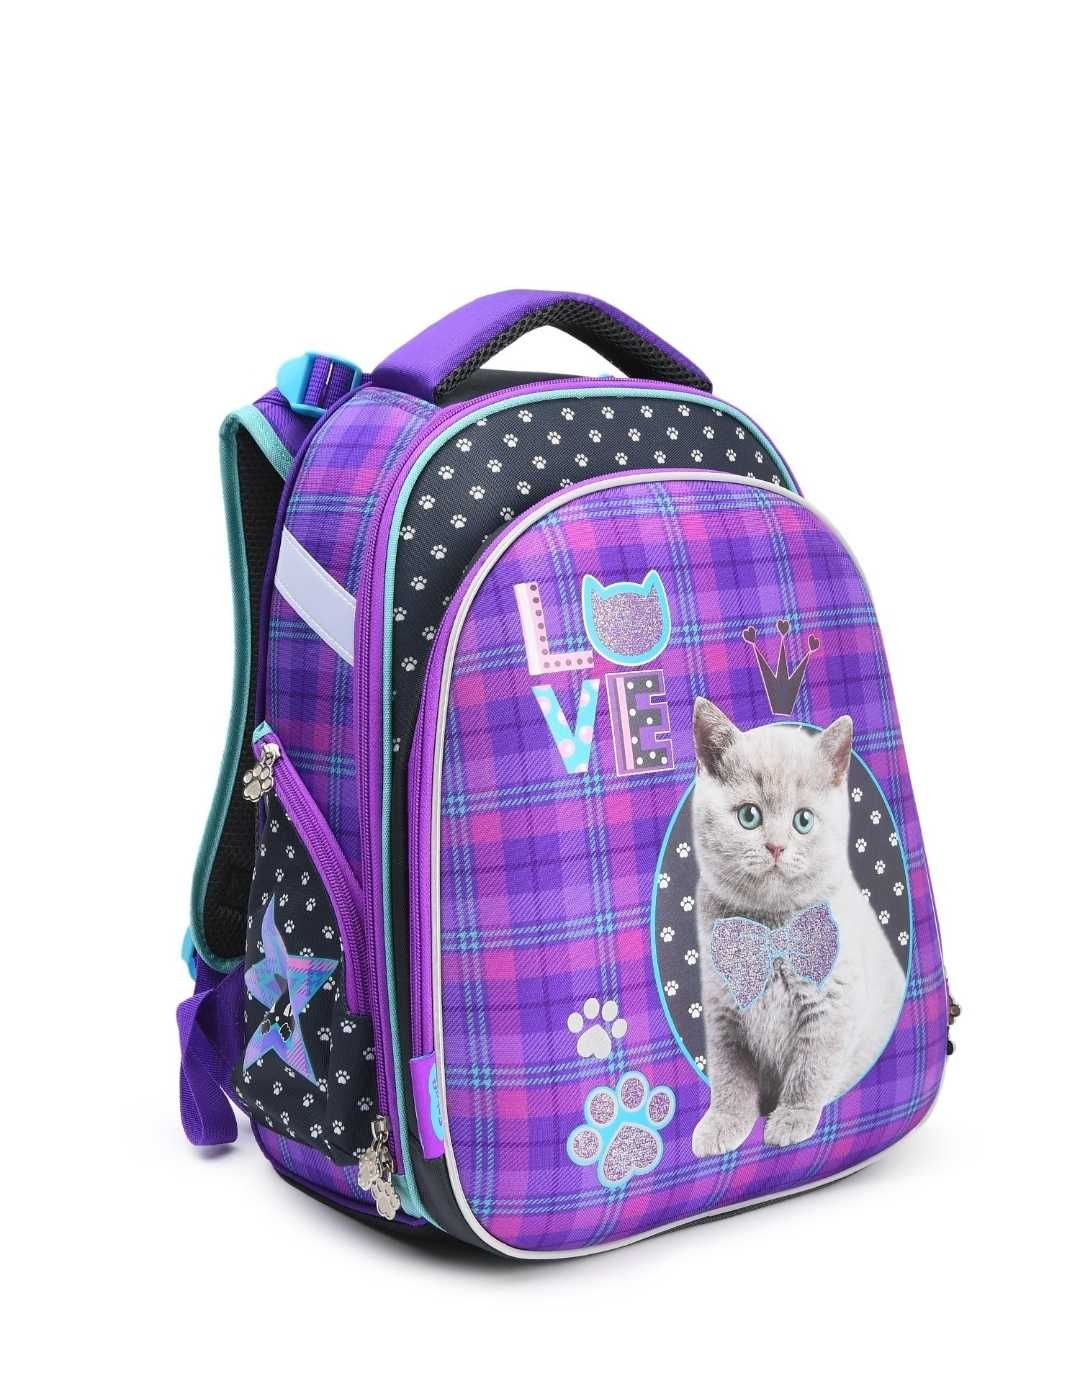 Новый рюкзак для школьников.